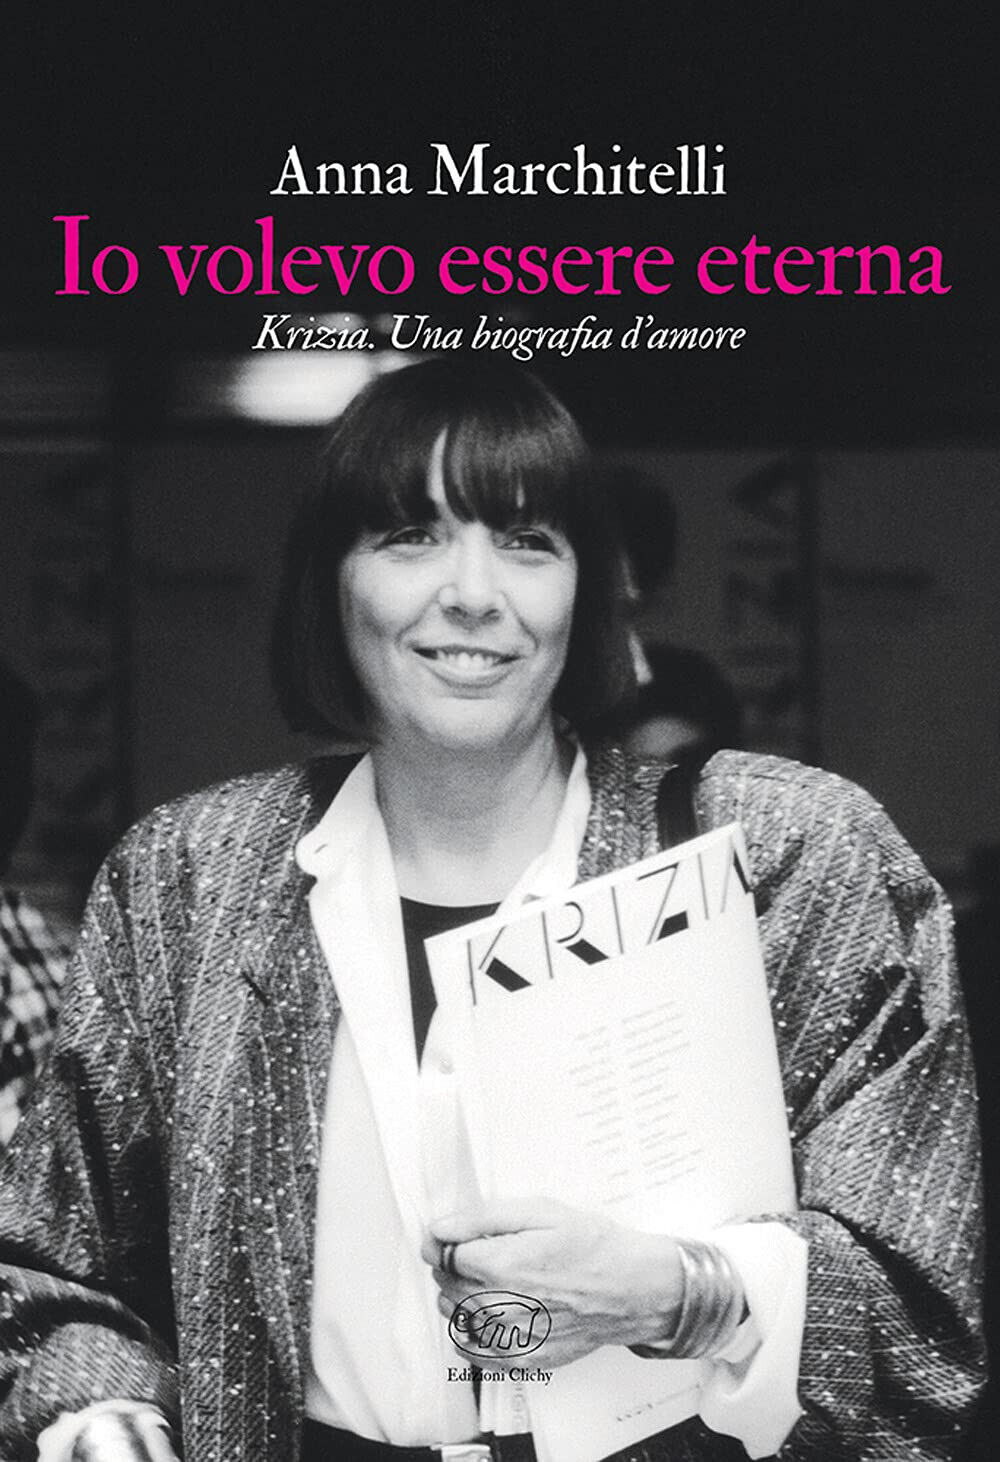 Io volevo essere eterna - Anna Marchitelli - Edizioni Clichy, 2021